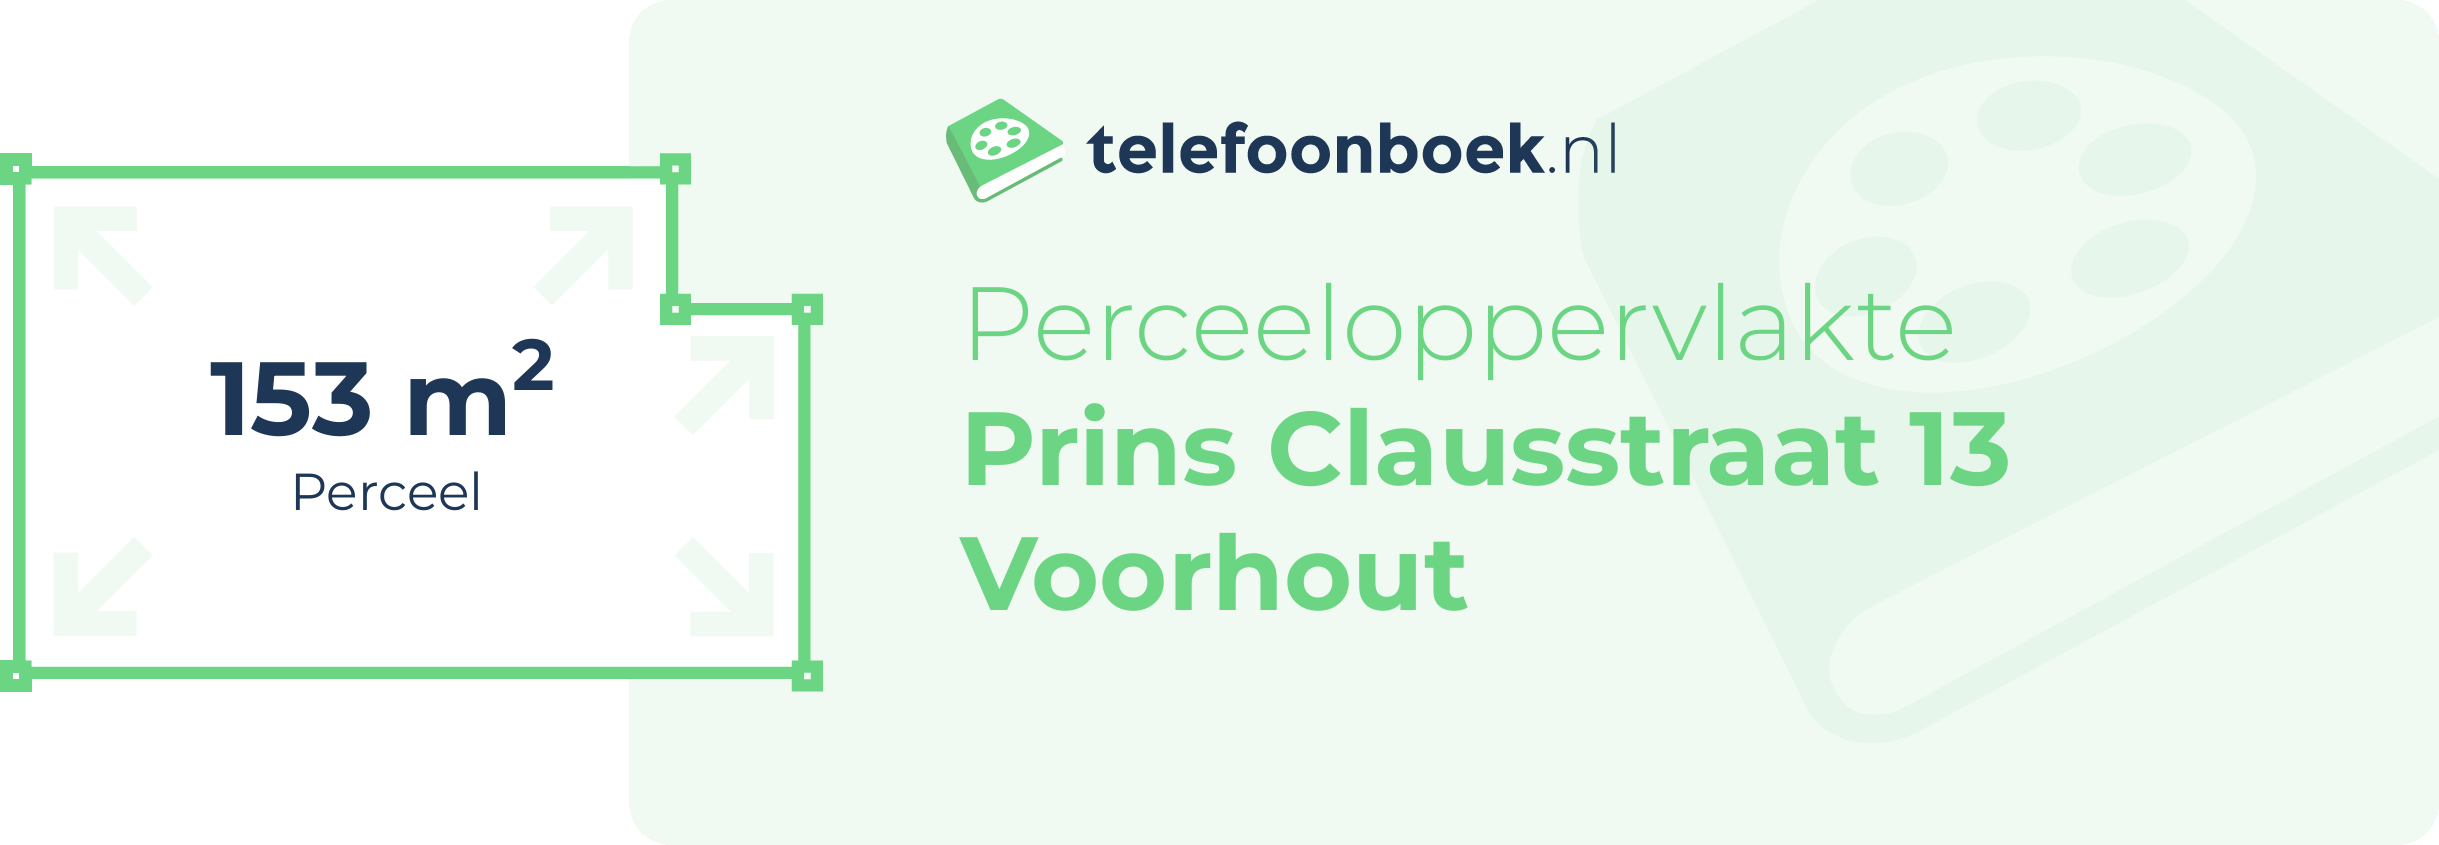 Perceeloppervlakte Prins Clausstraat 13 Voorhout